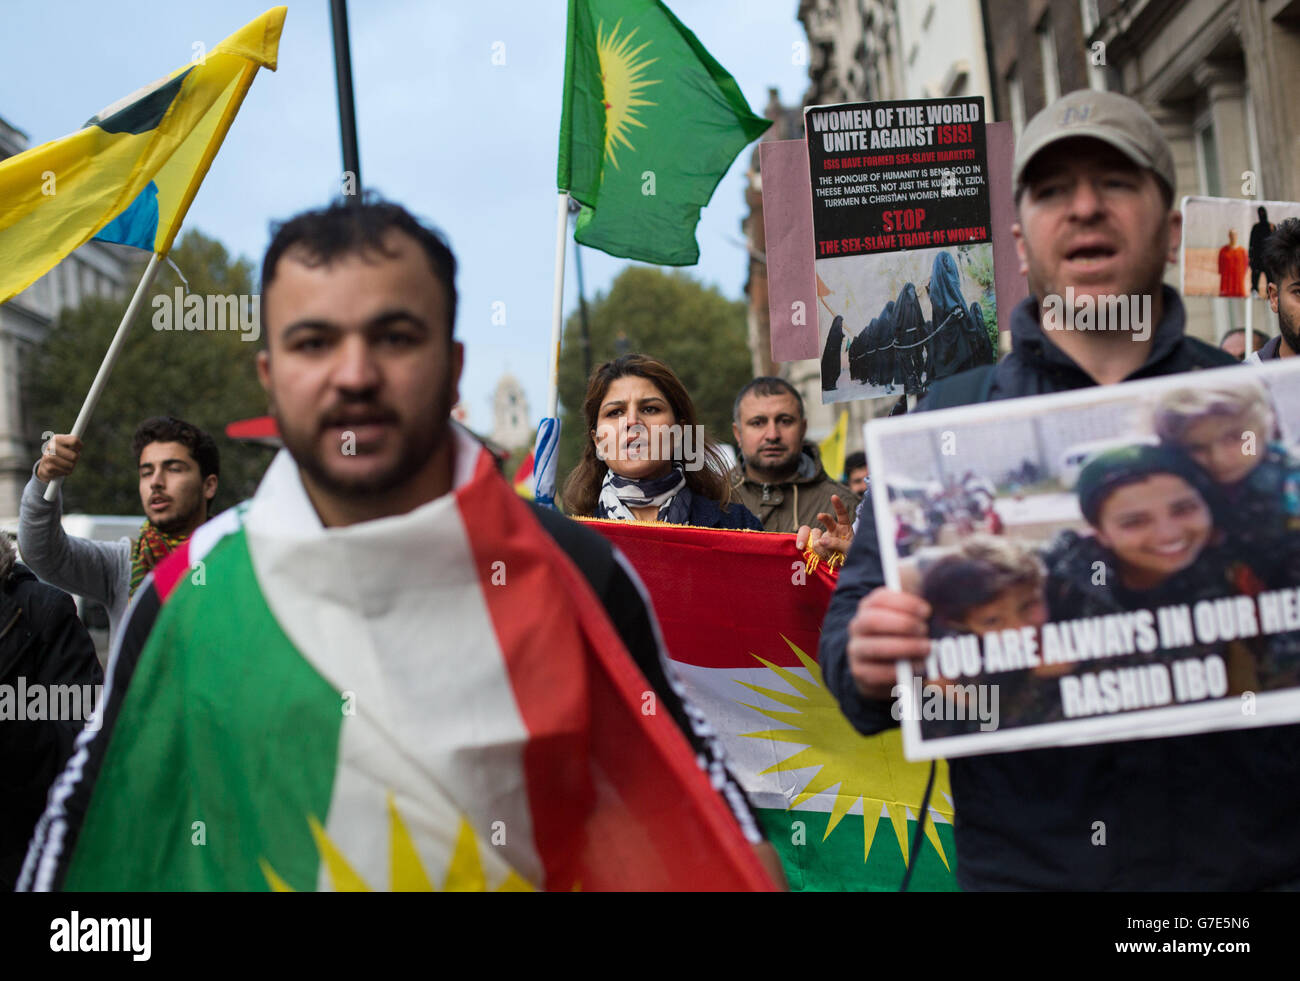 Les personnes manifestant près du pont de Westminster dans le centre de Londres avec des drapeaux et des bannières kurdes contre la menace de l'EI envers les minorités kurdes et autres en Syrie et en Irak. Banque D'Images